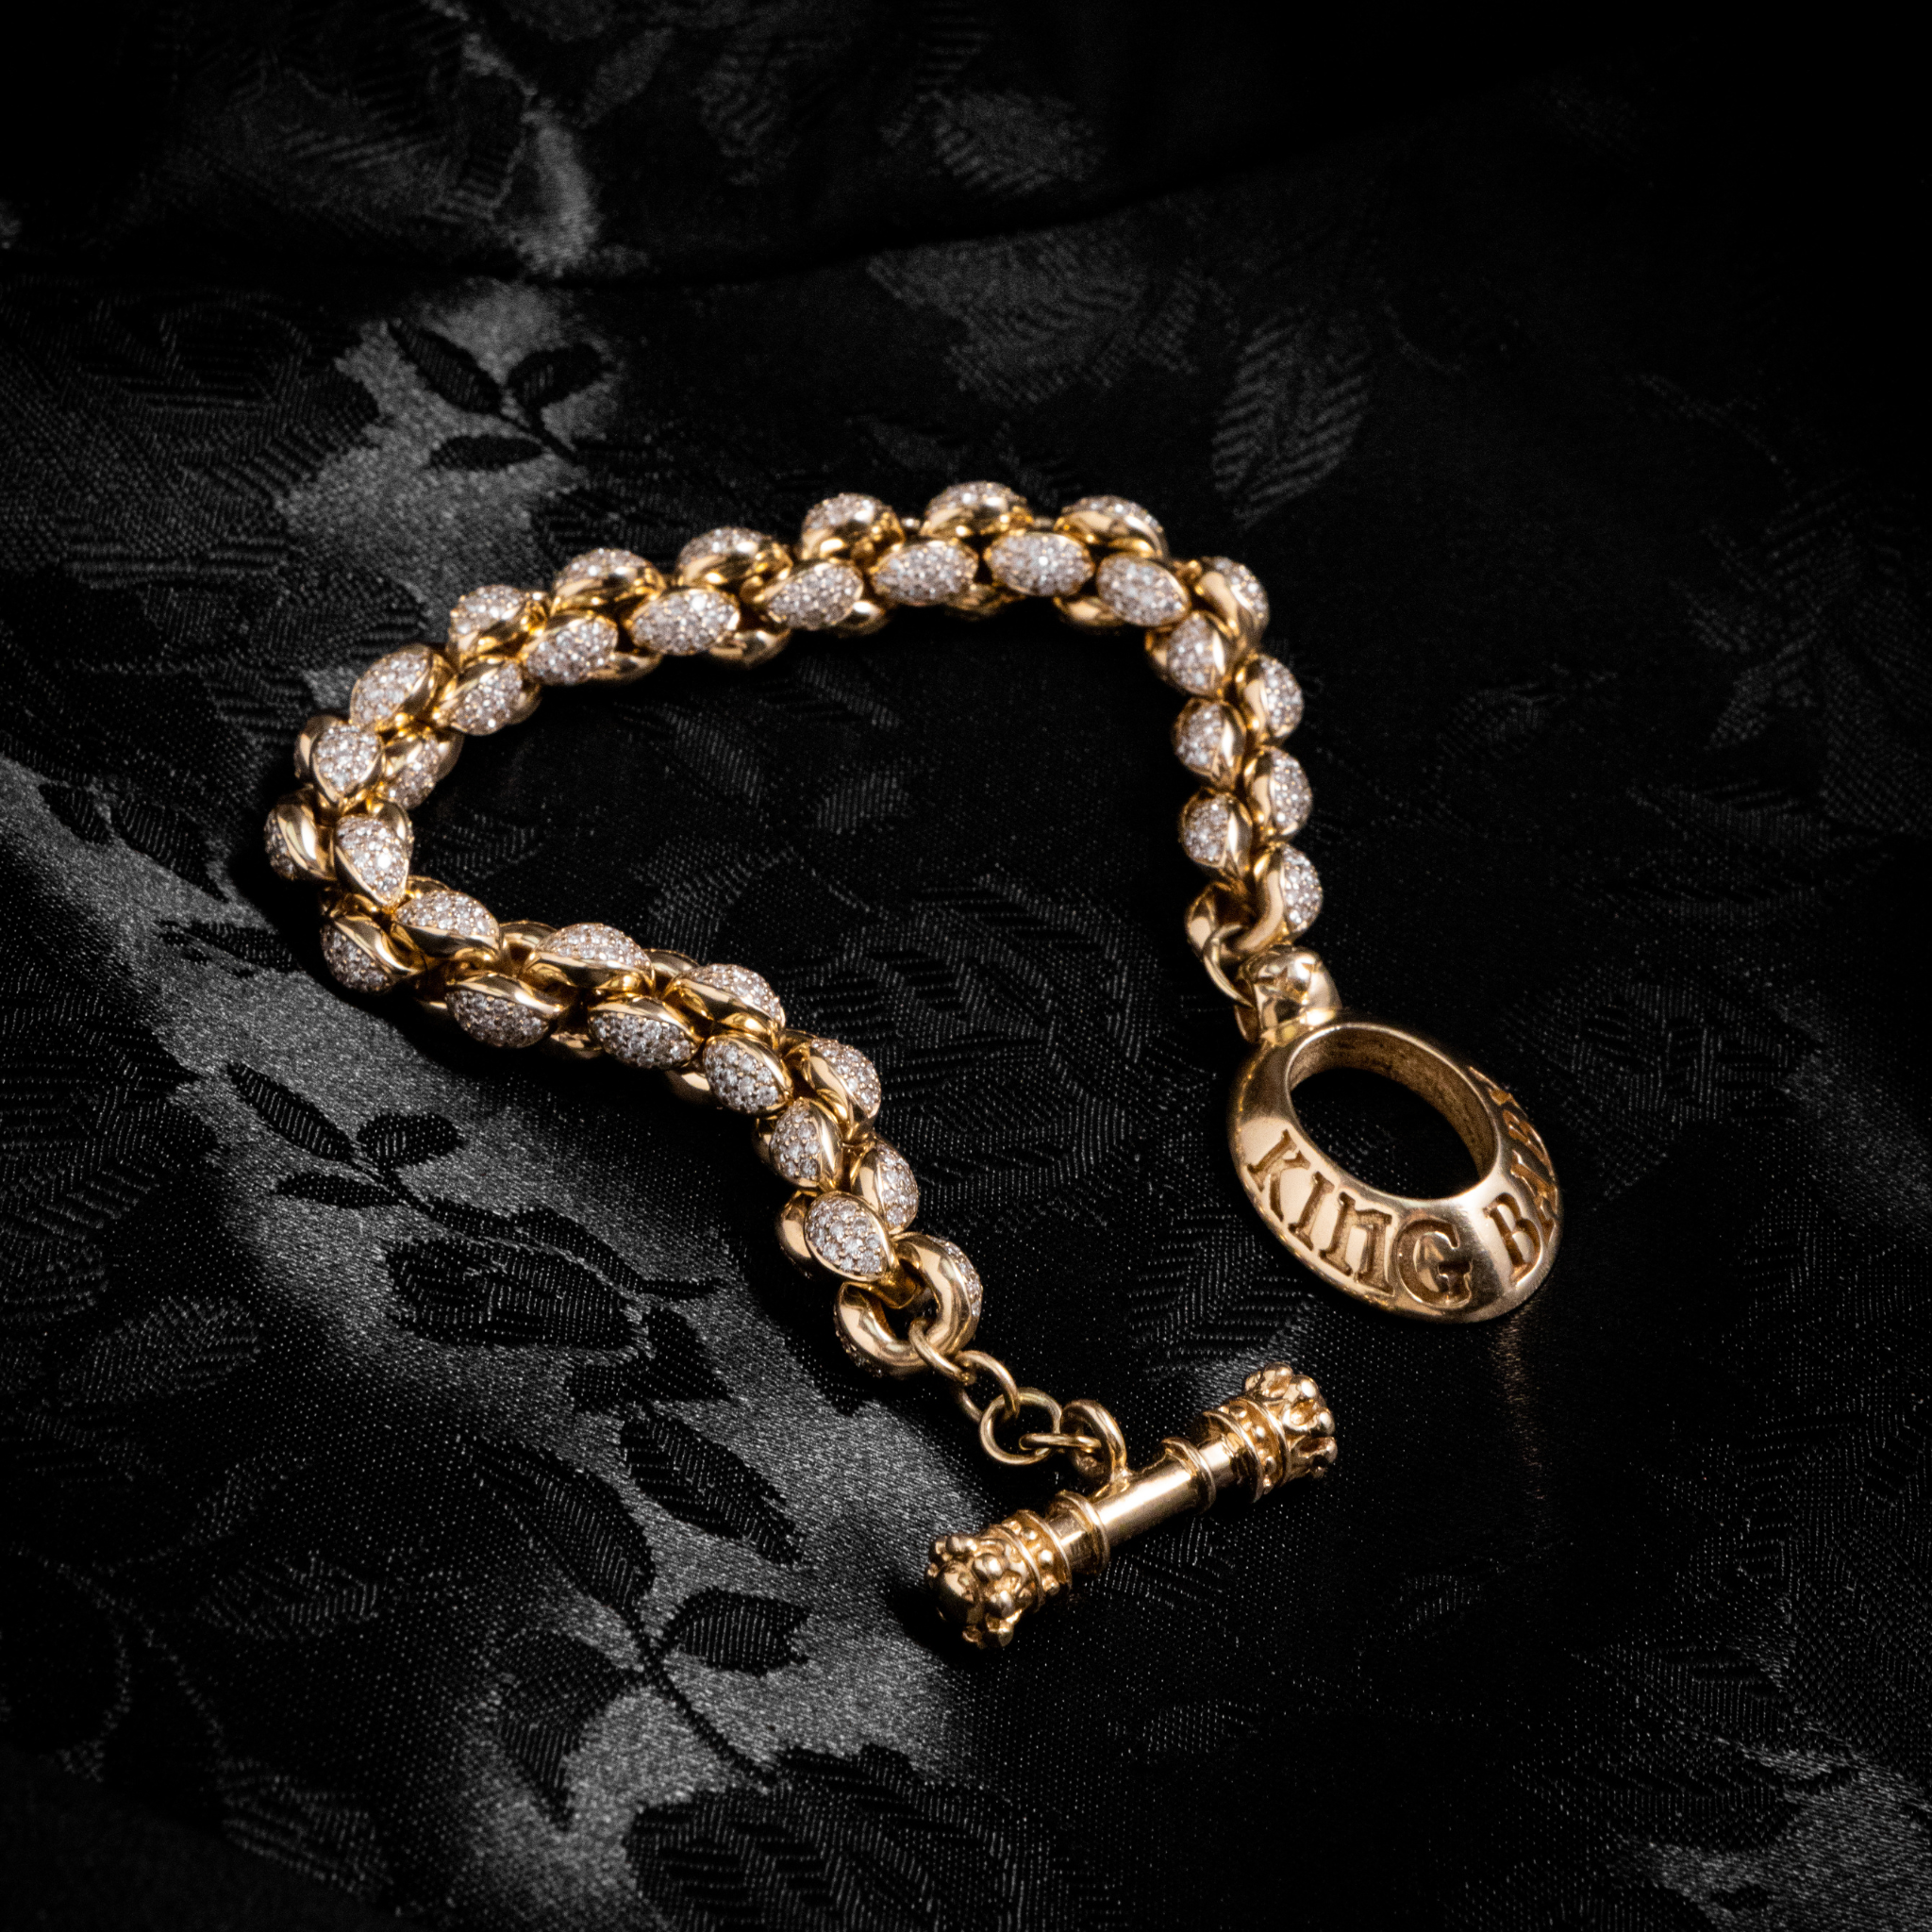 Slightly Lit Shot of 10k Gold Large Infinity Link Bracelet w/ Pave Diamonds on black background